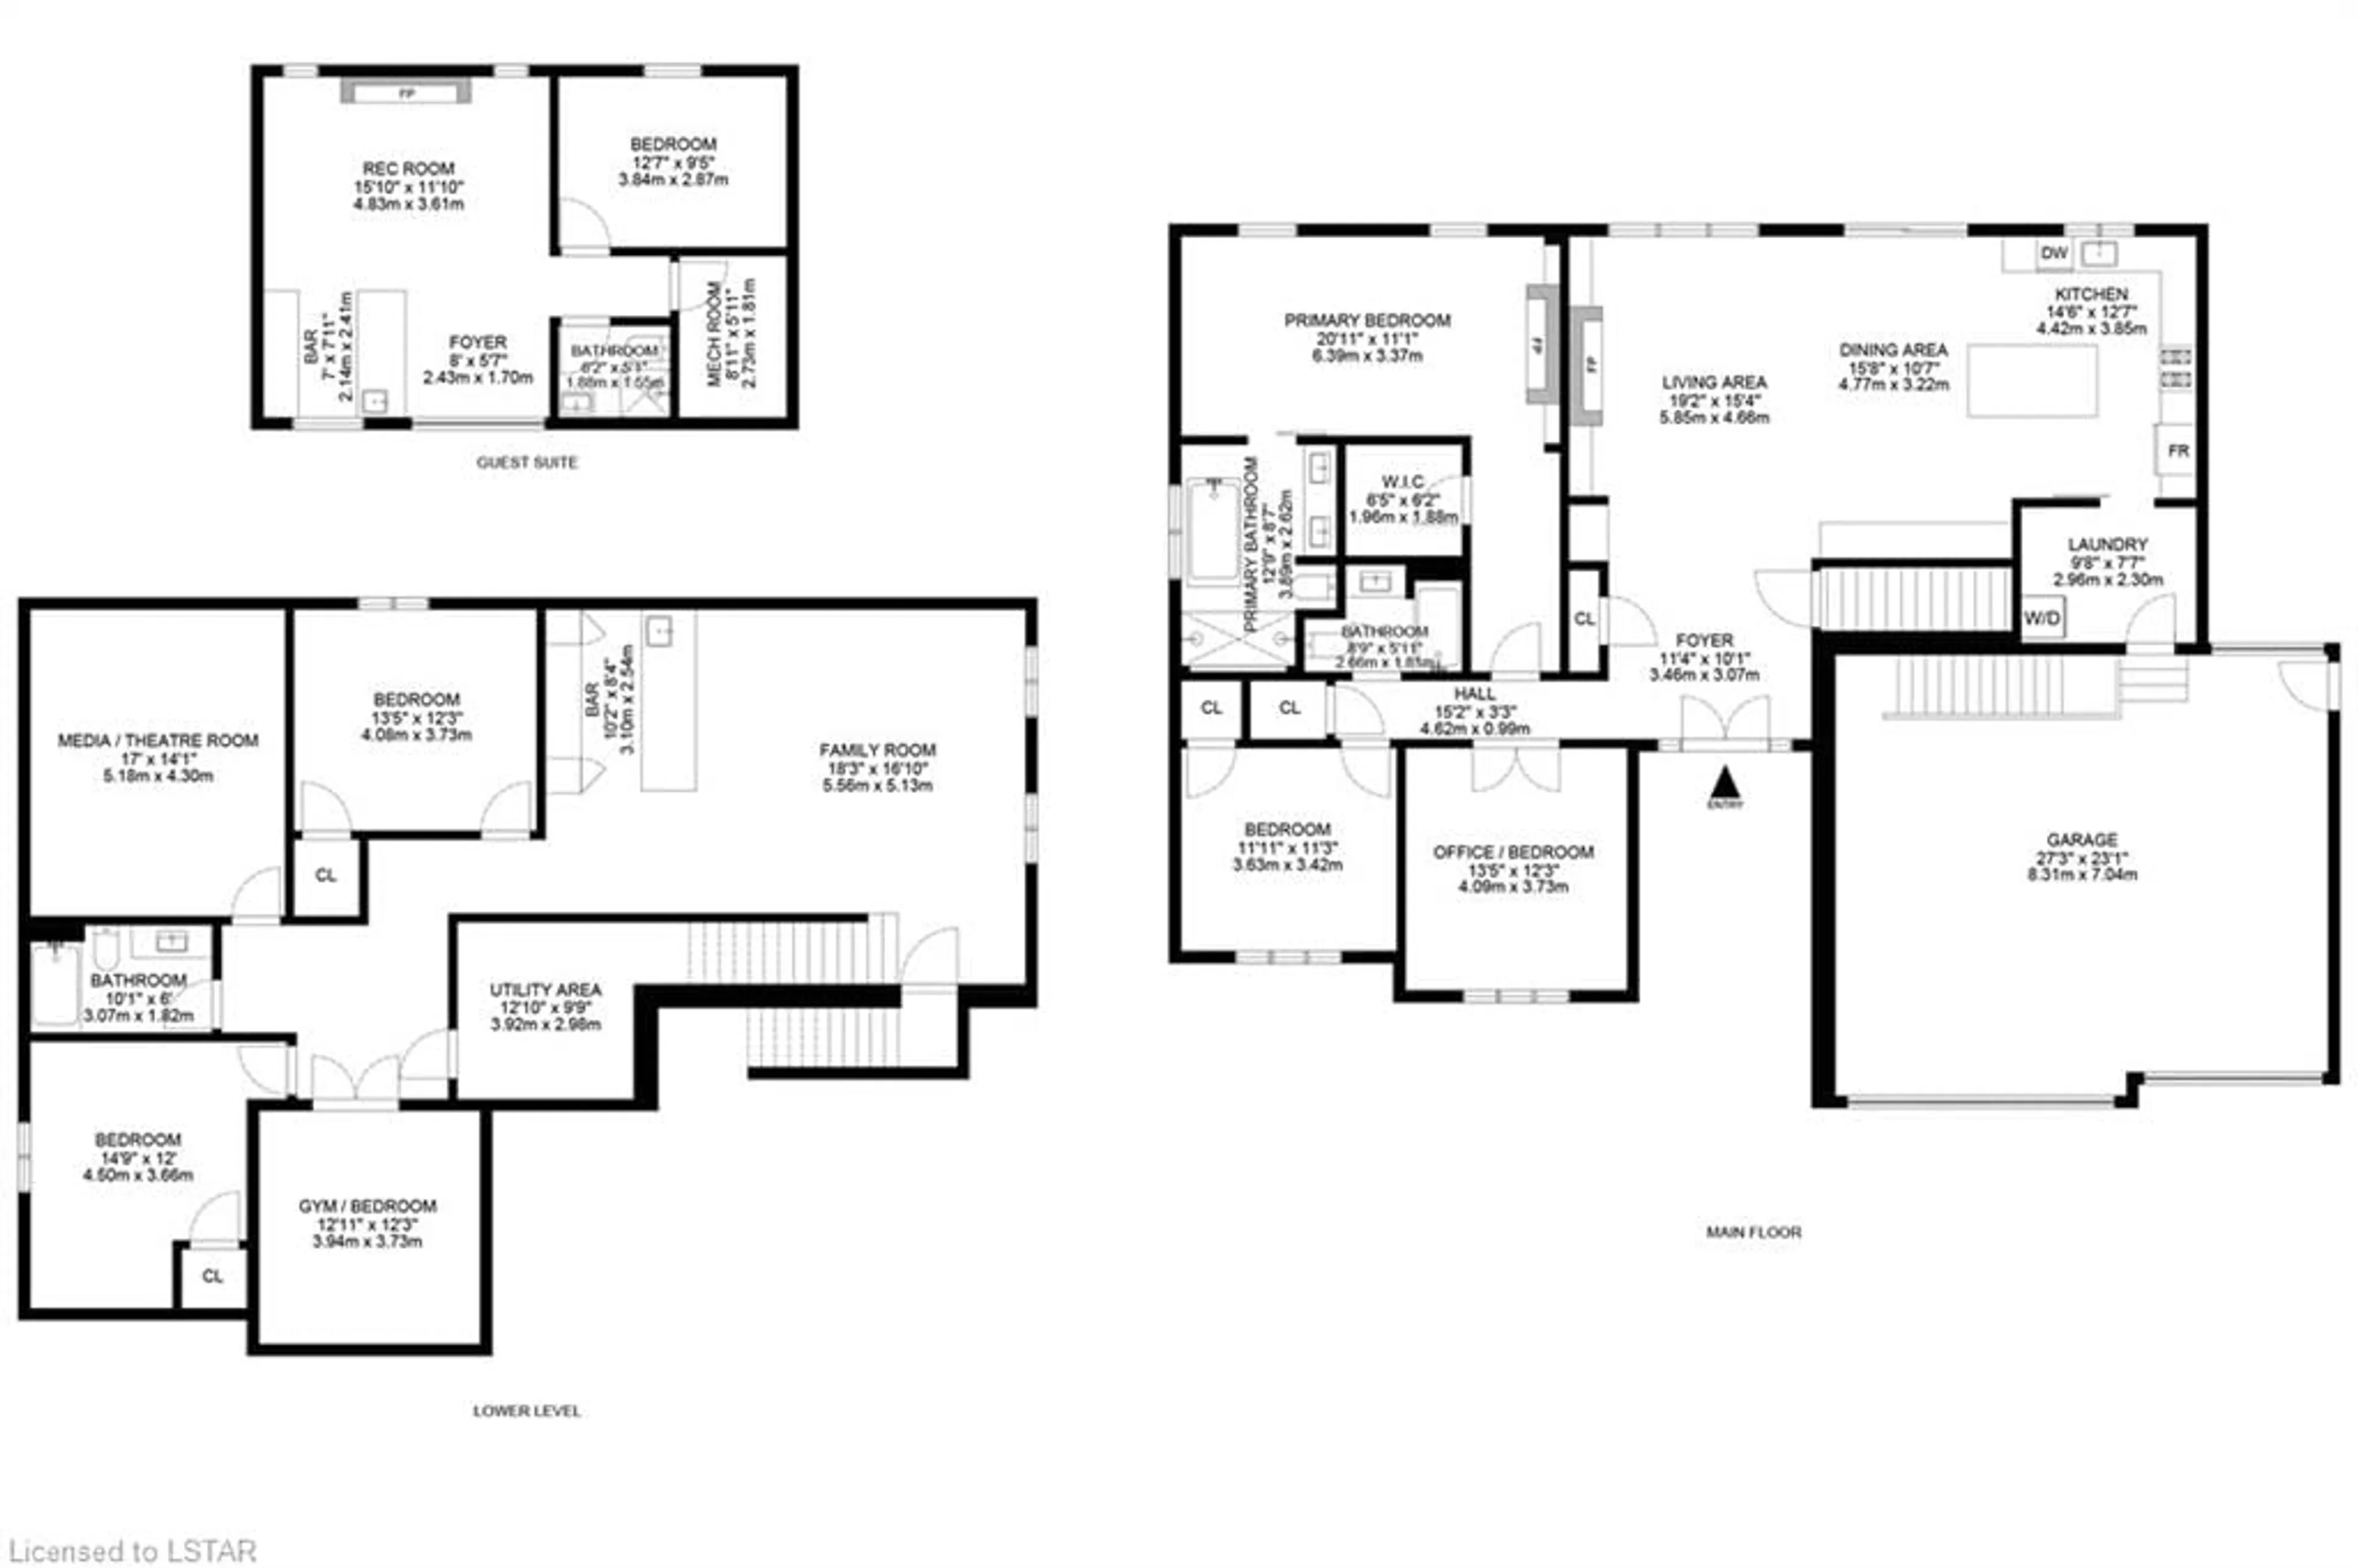 Floor plan for 10175 Merrywood Dr, Grand Bend Ontario N0M 1T0